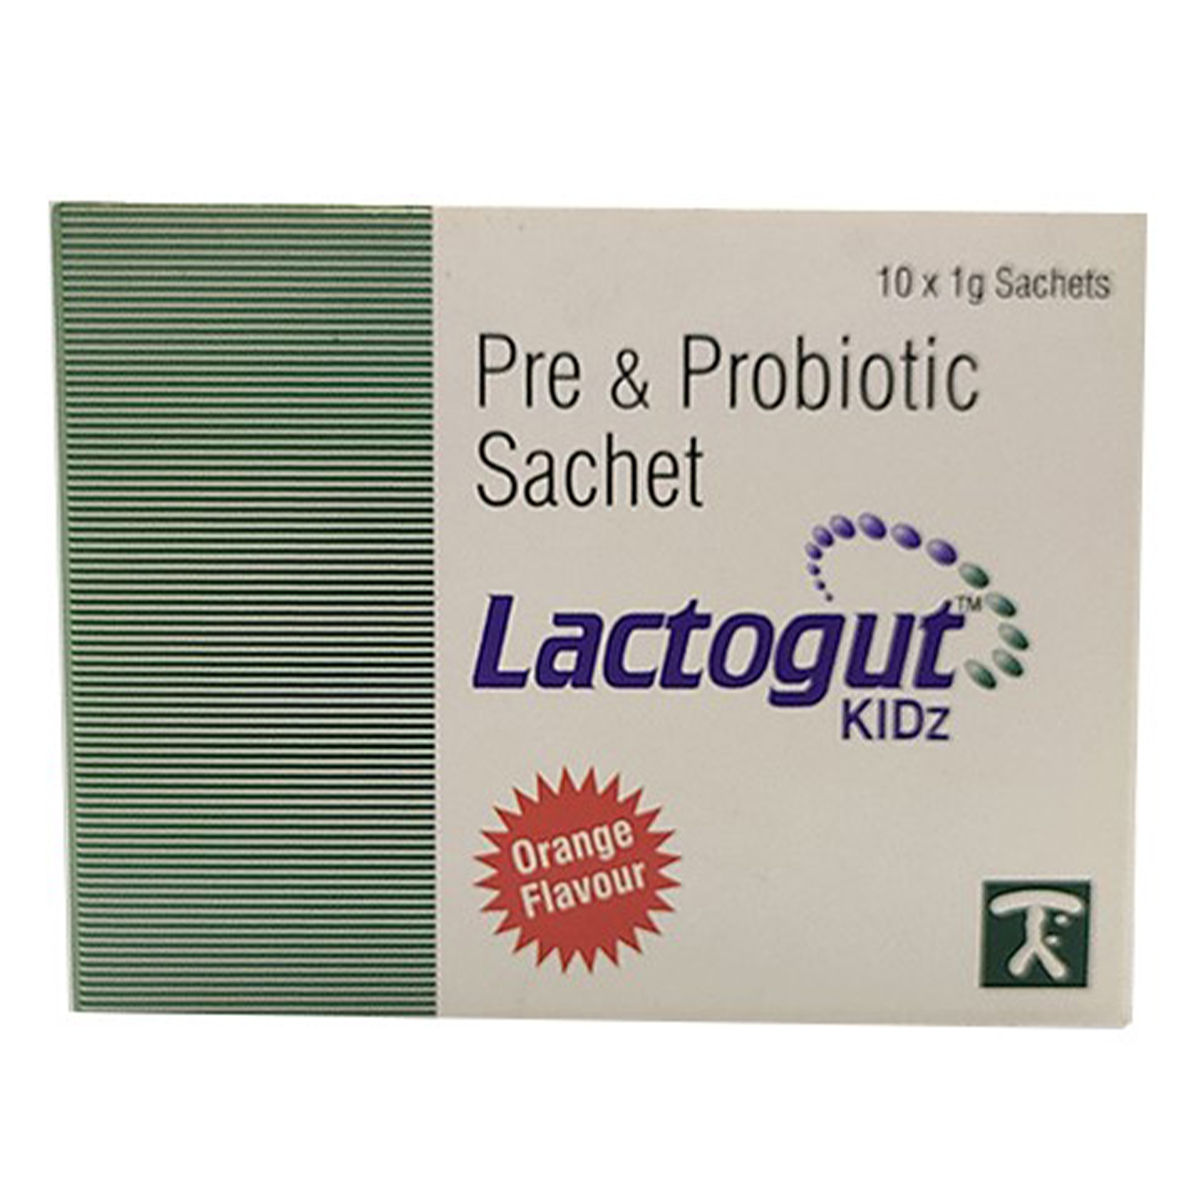 Buy Lactogut Kid Sachets 1gm Online